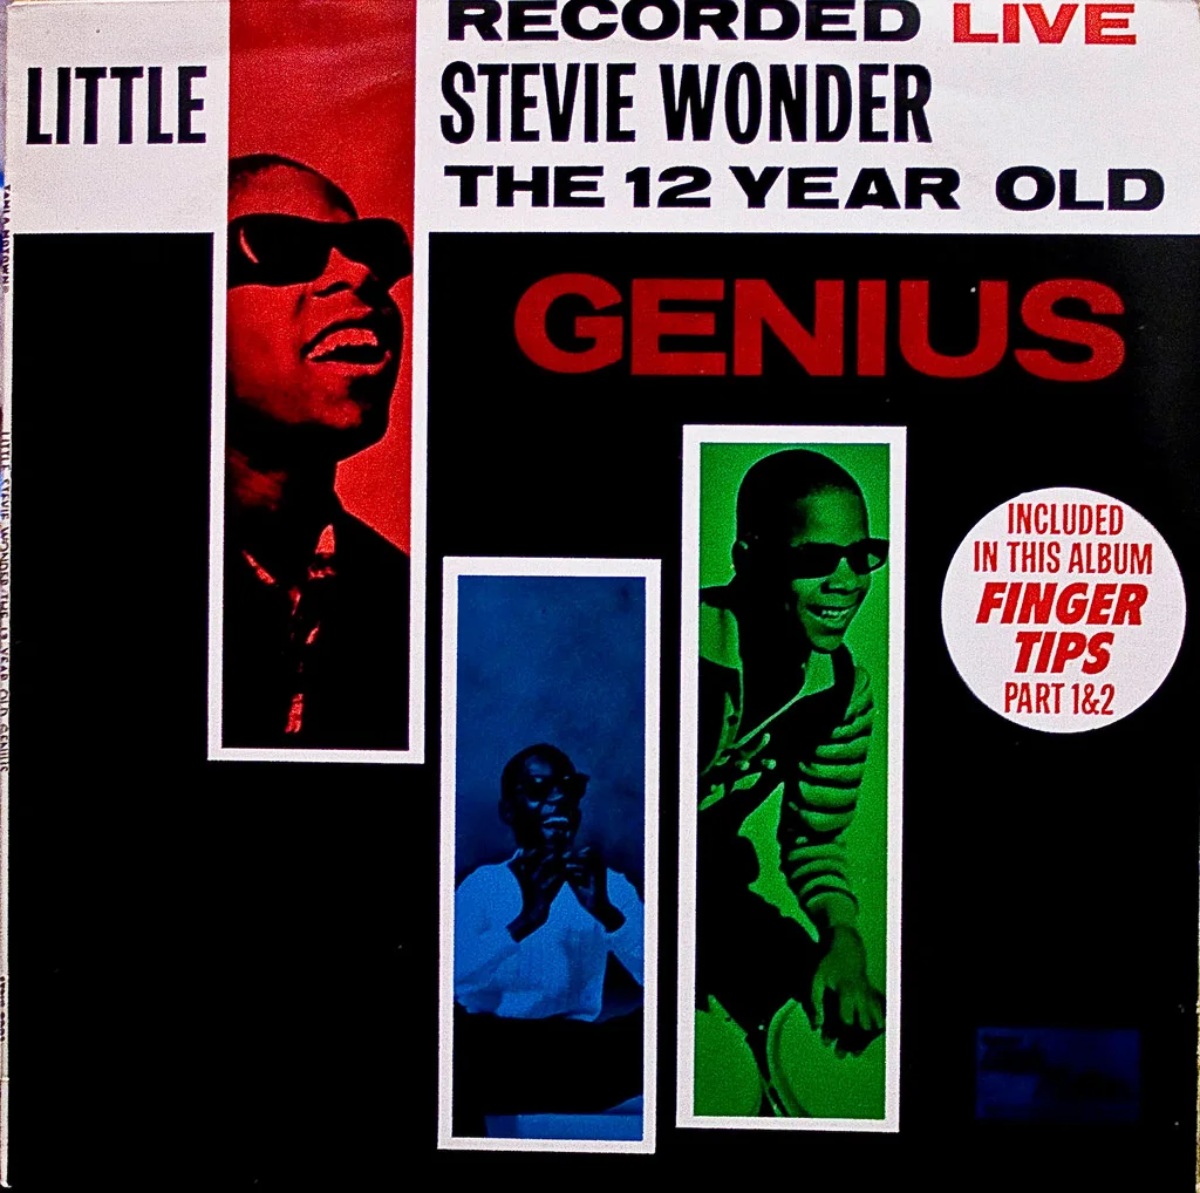 Couverture de l'album Recorded Live de Stevie Wonder : le génie de 12 ans